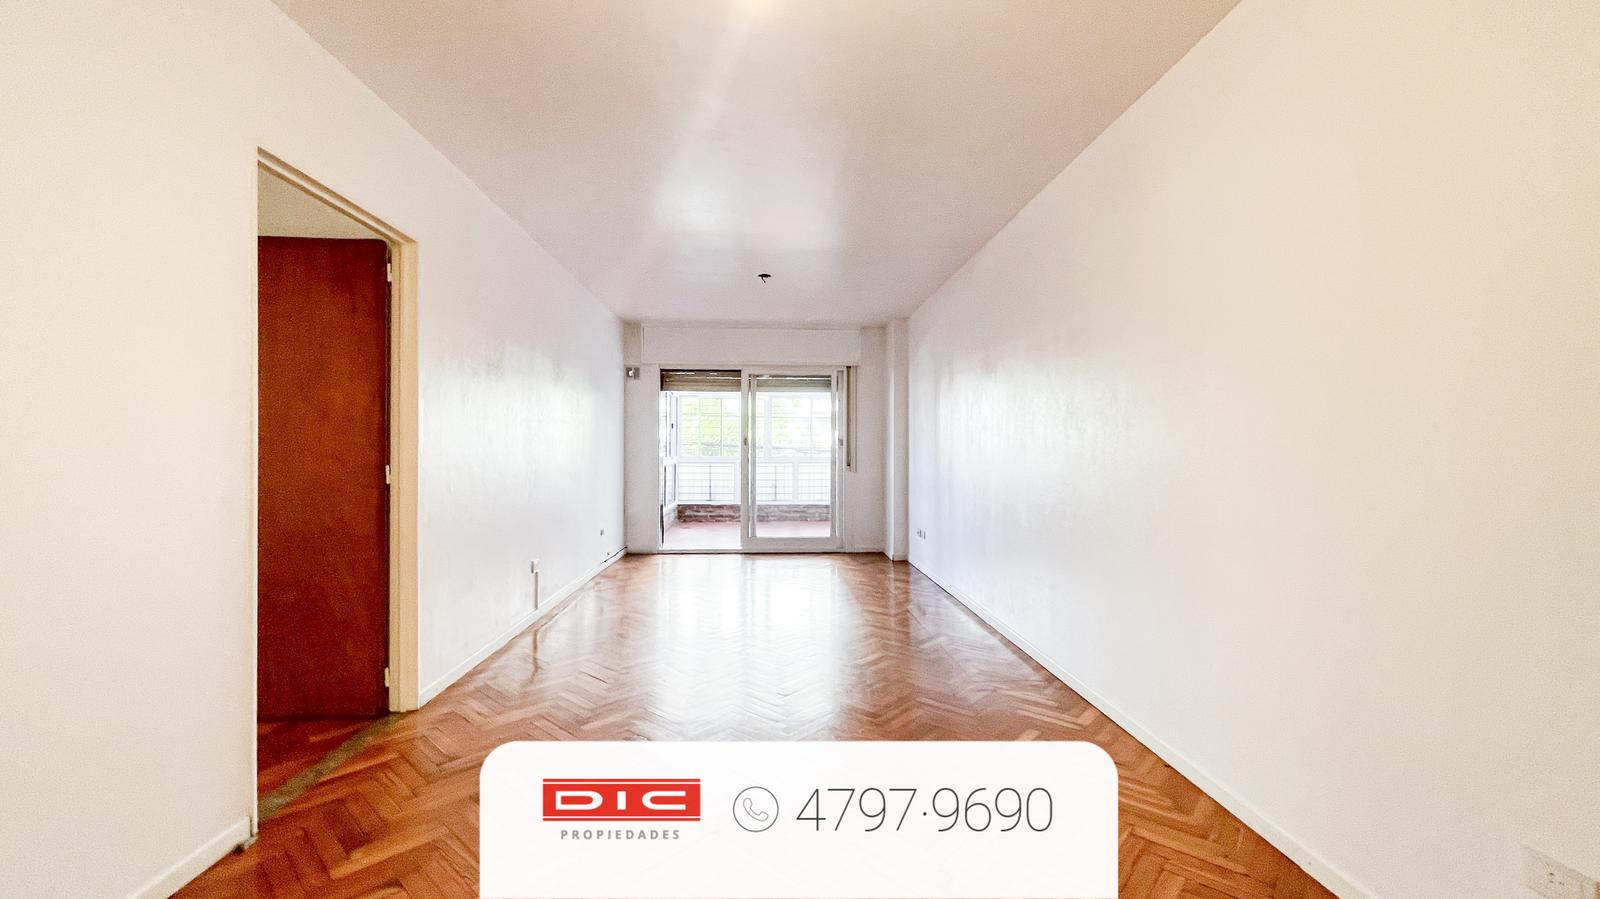 #5090454 | Sale | Apartment | Vicente Lopez Vias / Rio (Dic Propiedades)